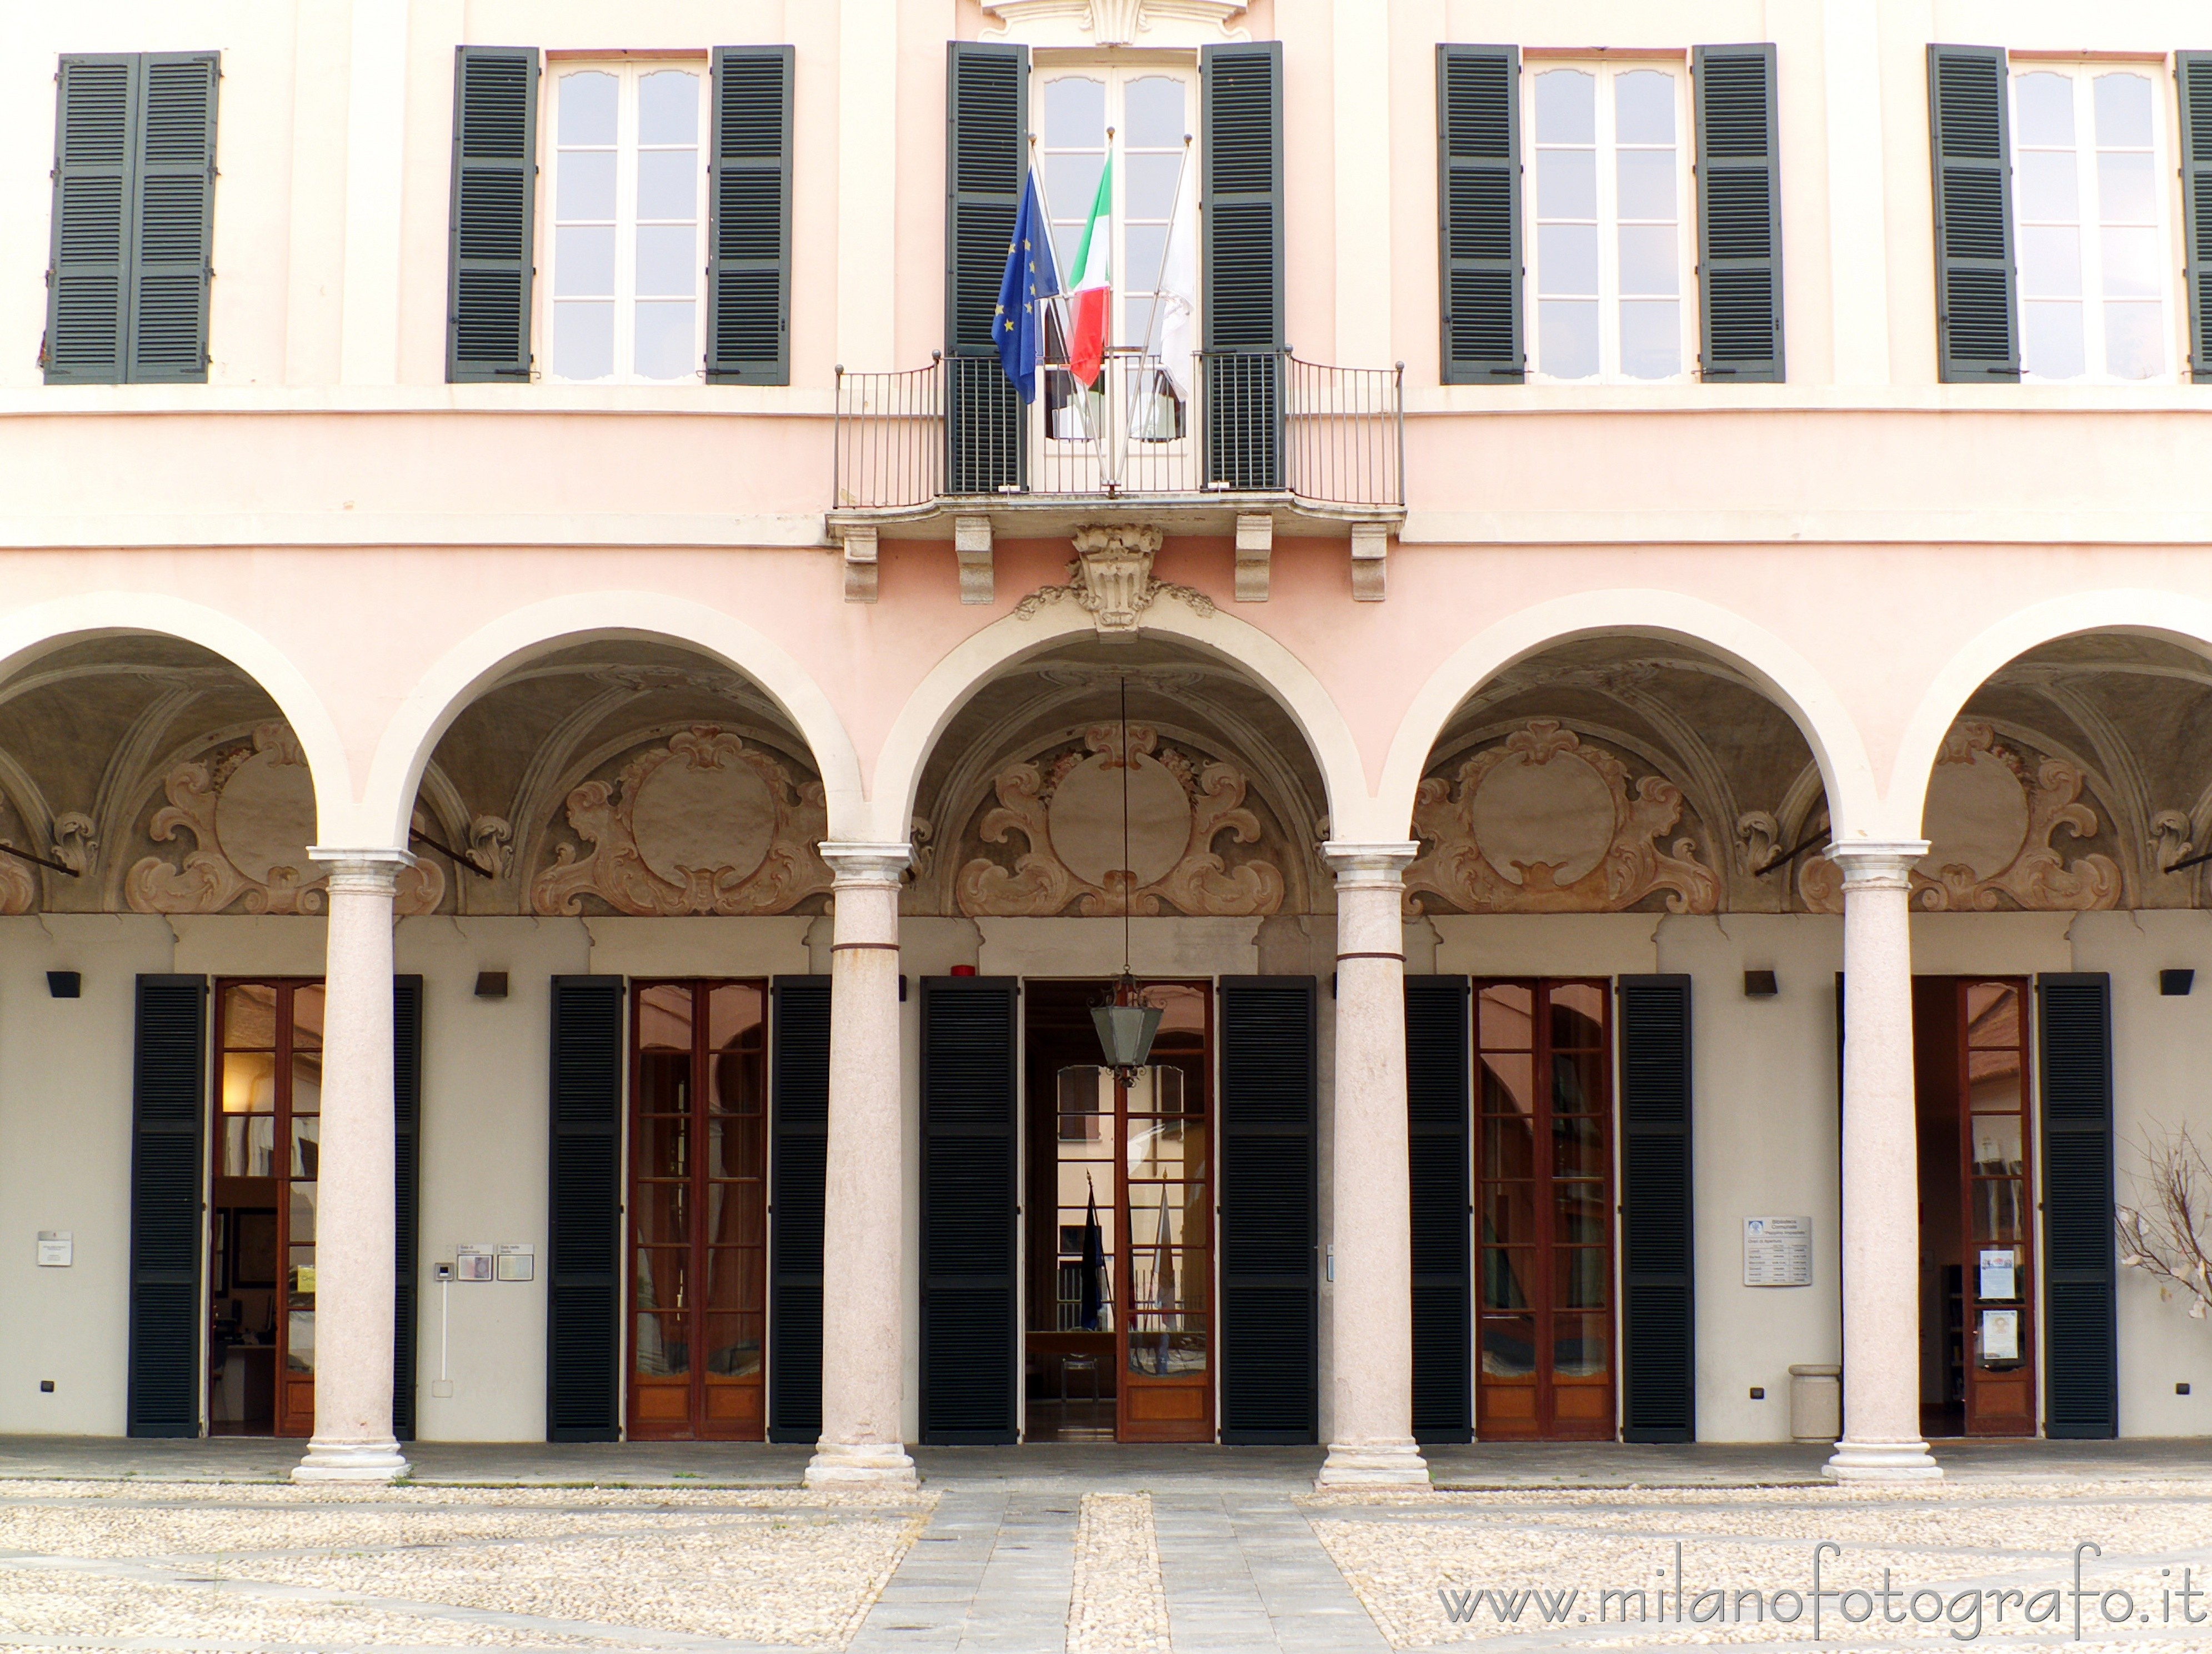 Cavenago di Brianza (Monza e Brianza, Italy): Façade of the main block of Rasini Palace - Cavenago di Brianza (Monza e Brianza, Italy)